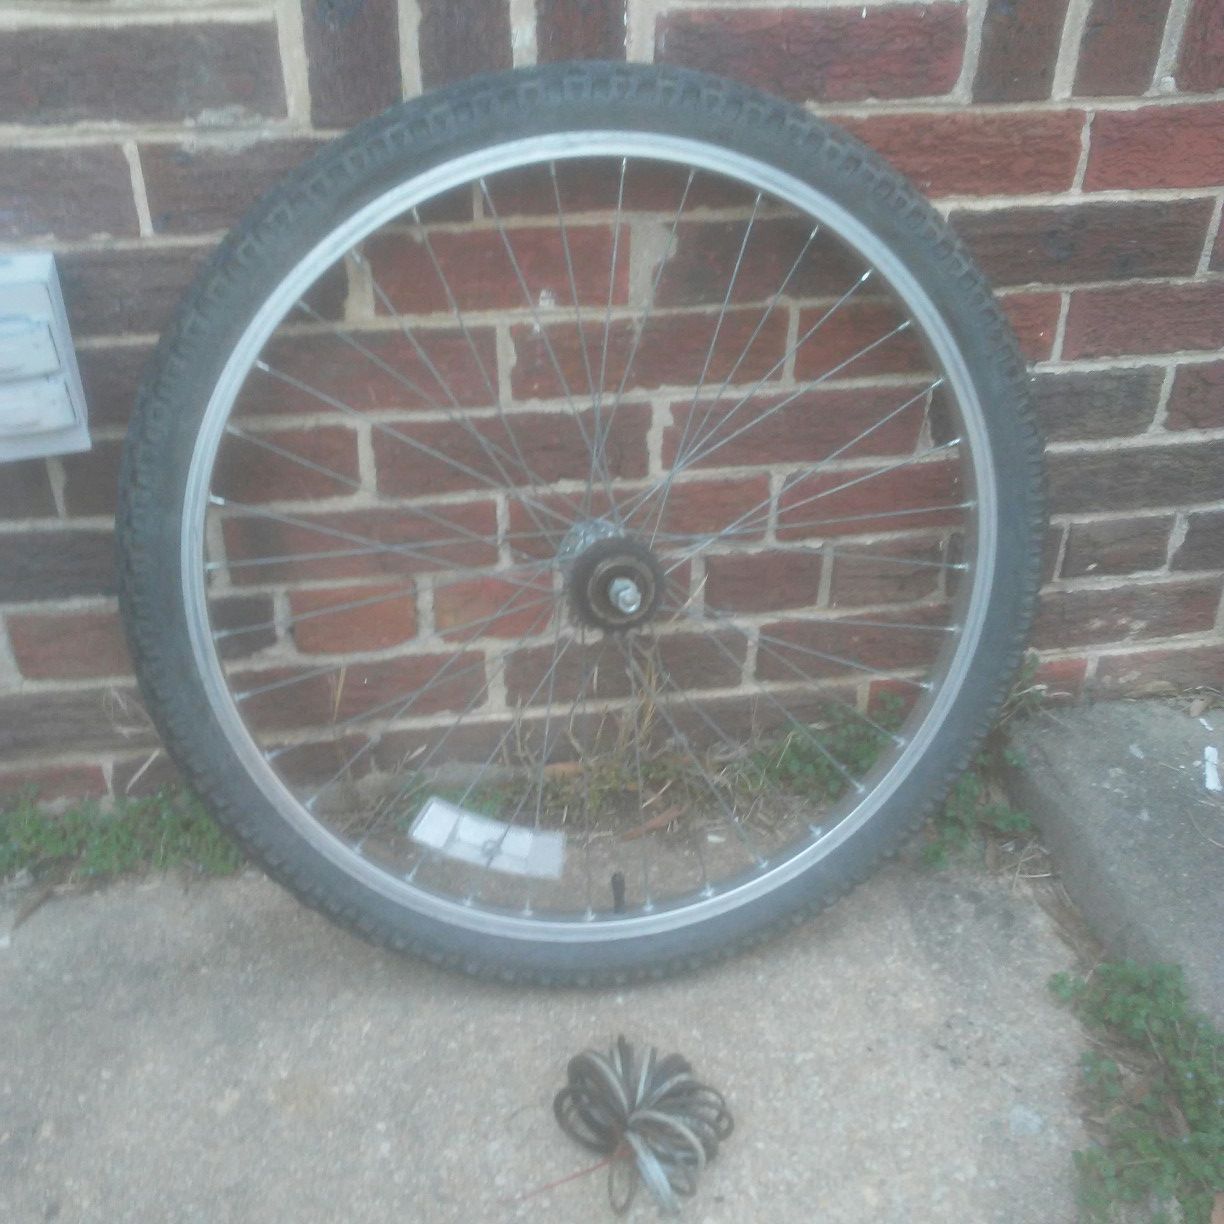 26" inch single mountain bike rear wheel